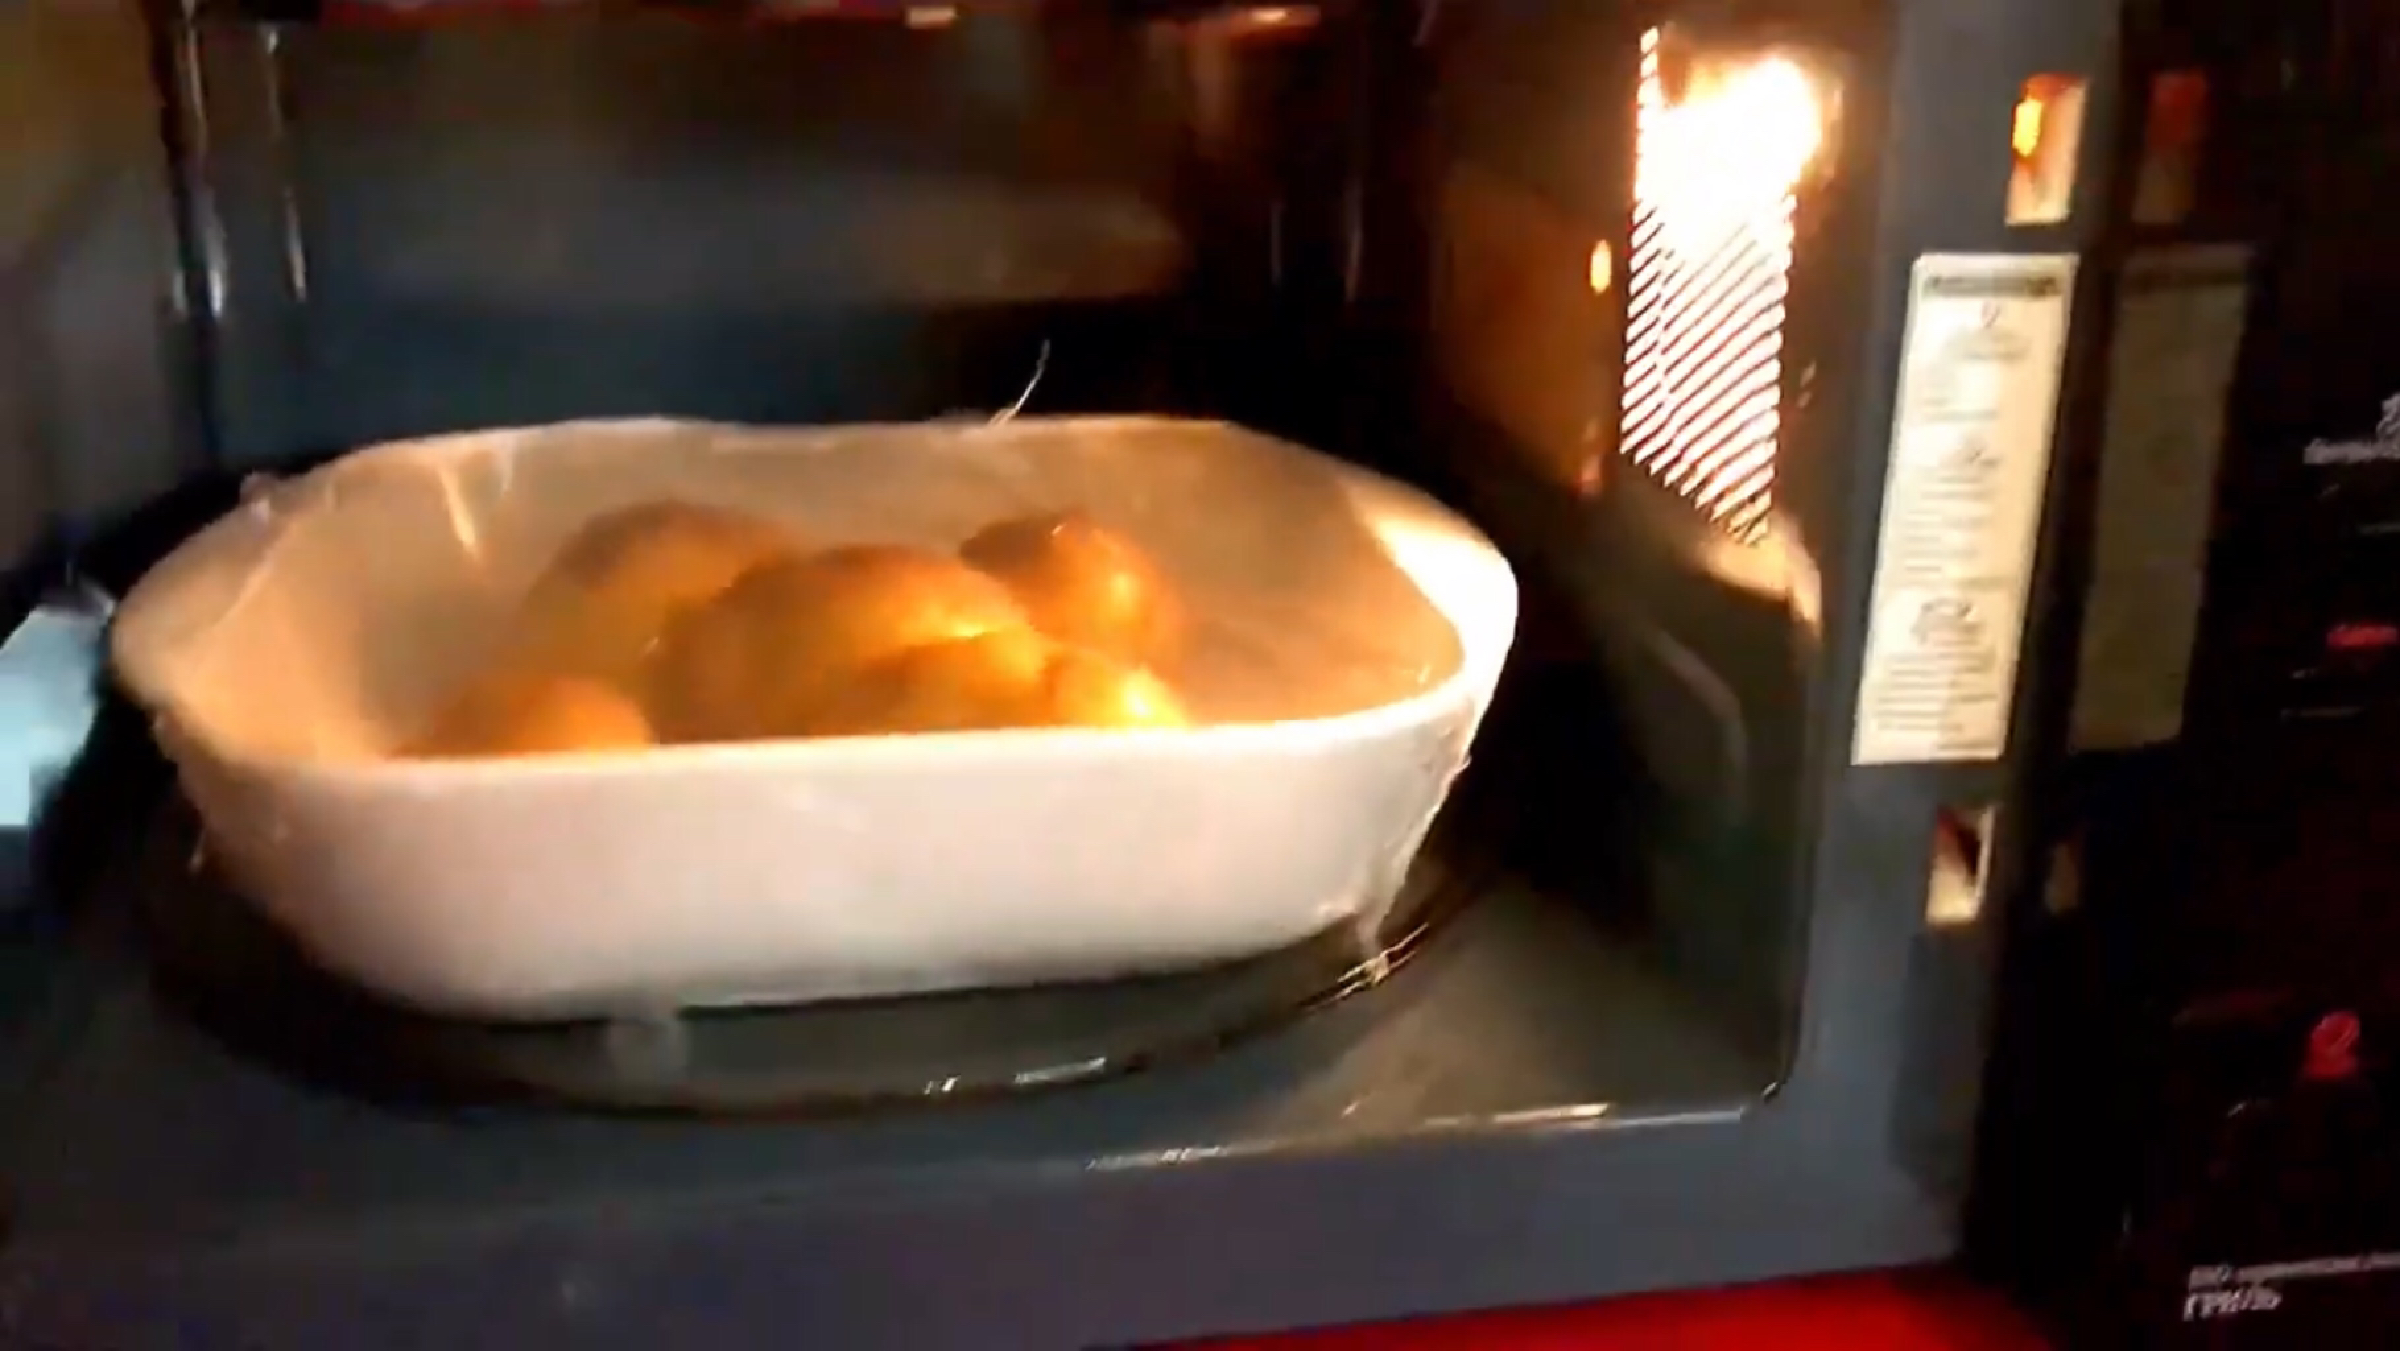 Картошка в микроволновке сколько времени. Картошка в микроволновке. Картошка в микроволновке в пакете. 5 Минут картошка. Сколько готовить картофель в микроволновке по времени.